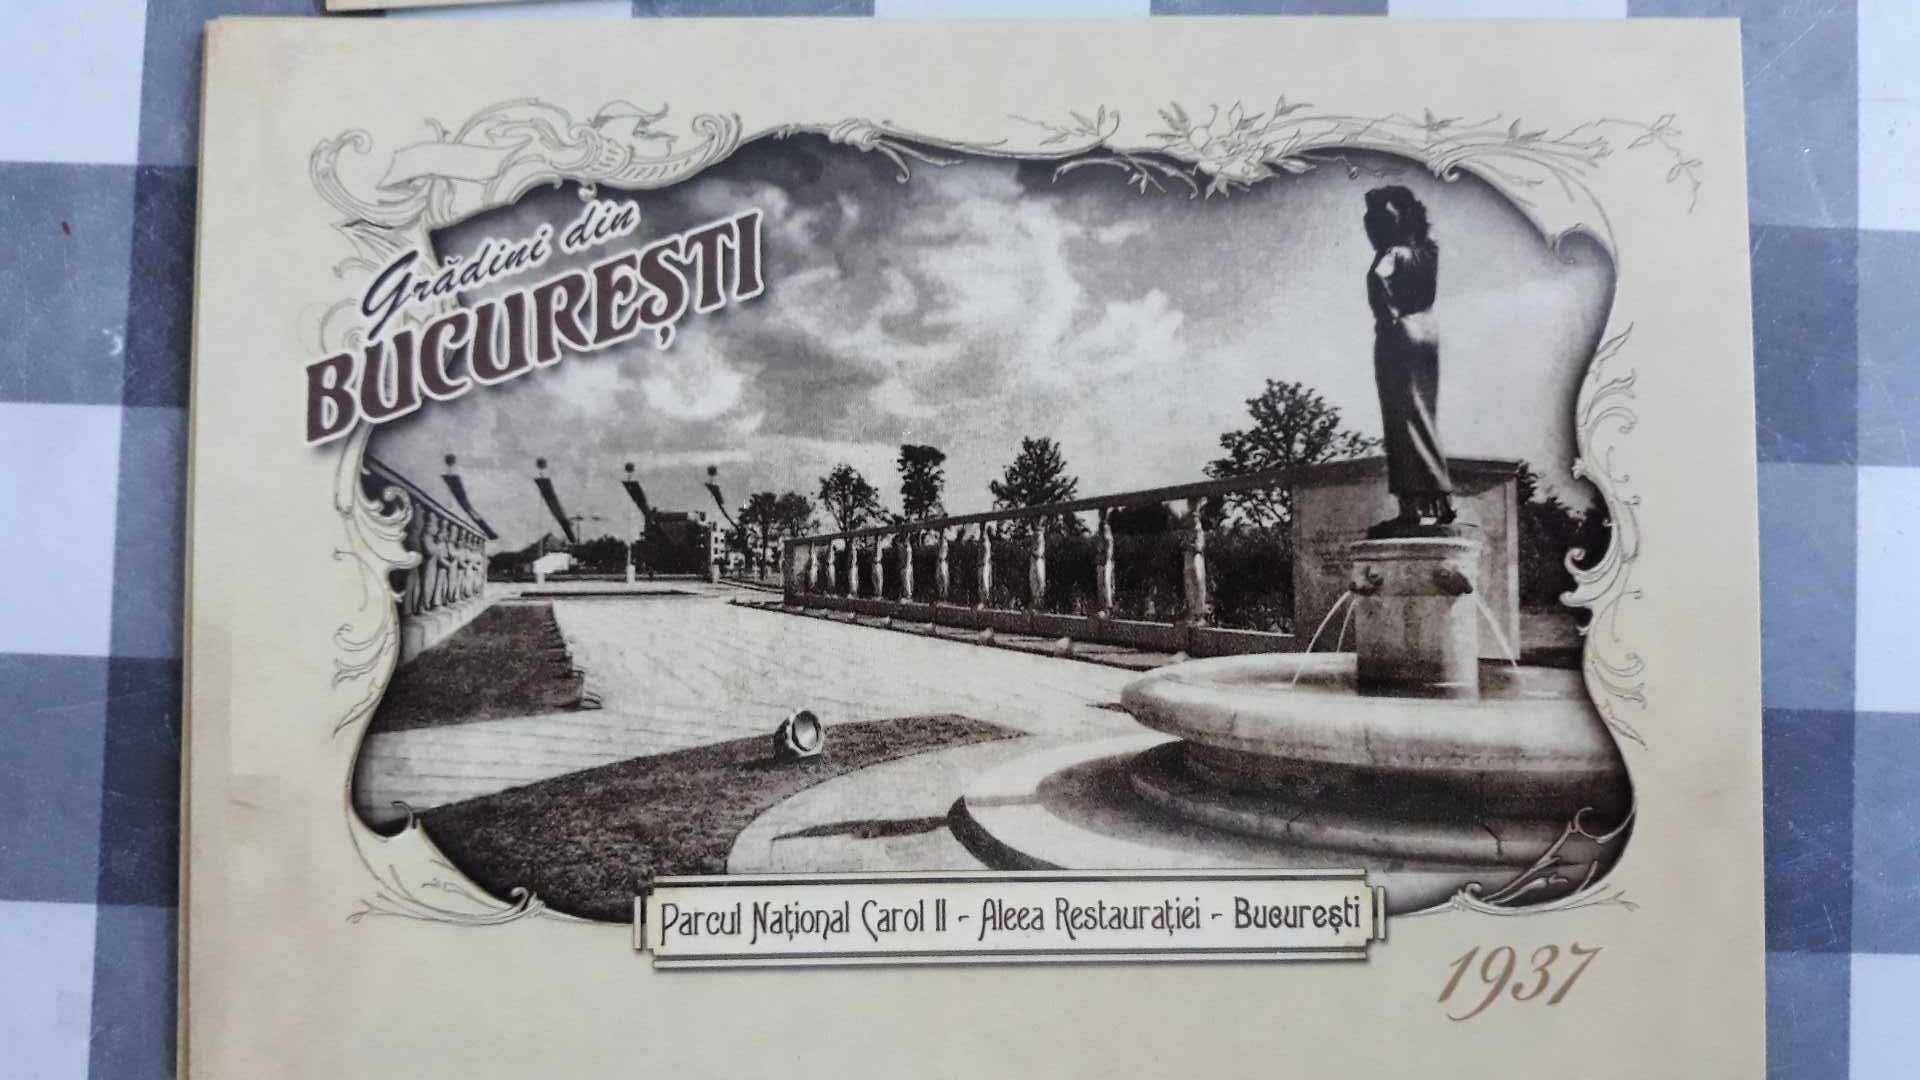 Carti postale noi cu poze vechi din parcuri, Bucurestiul de altadata.